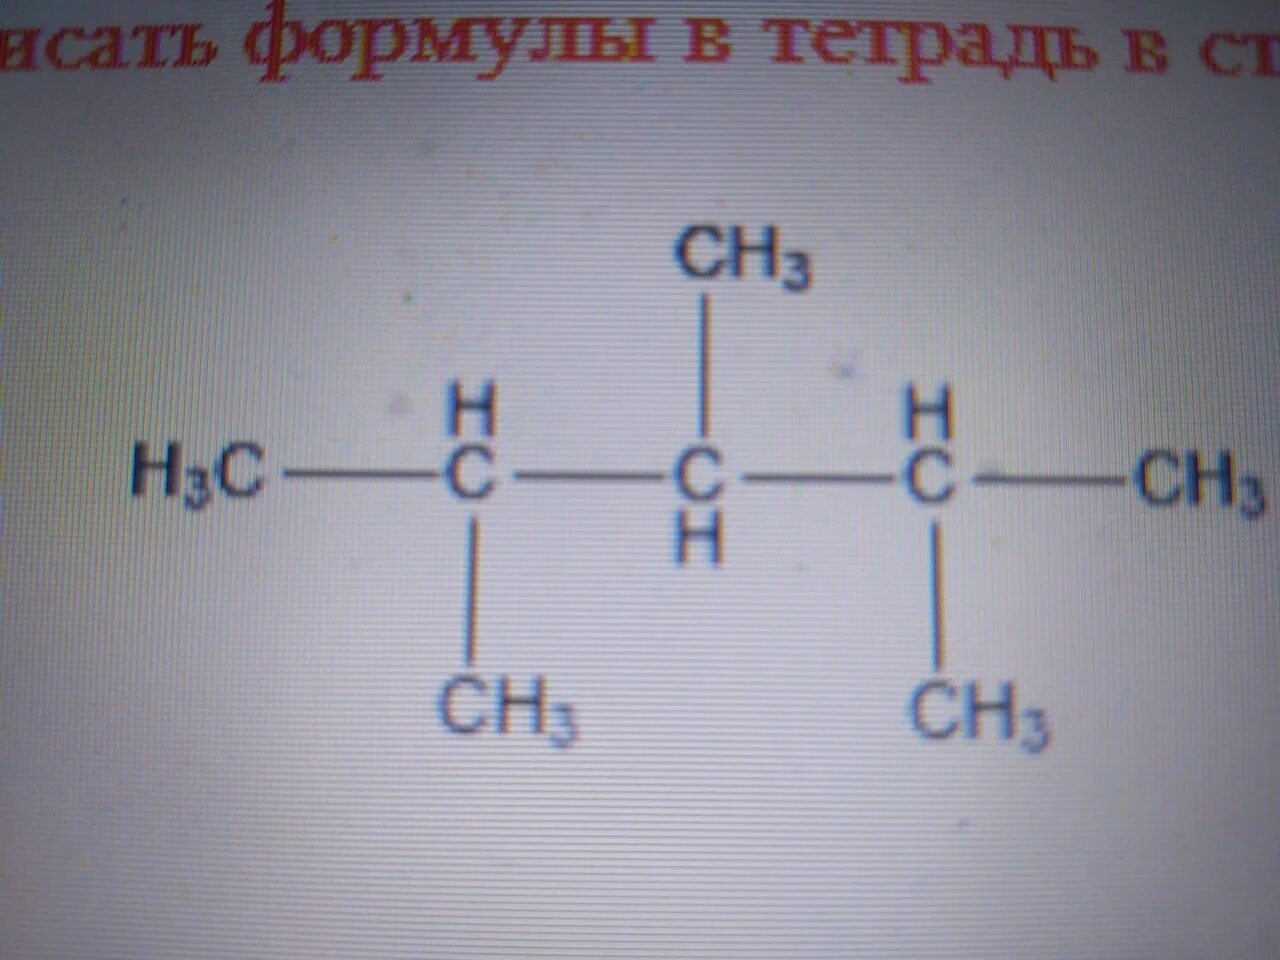 Органическое соединение ch3 ch2 ch. H3c Ch c Ch ch3. H3c-c---c-Ch-Ch-ch3. H3c-c-ch3=Ch-ch3. Структурная формула h3c-ch3.